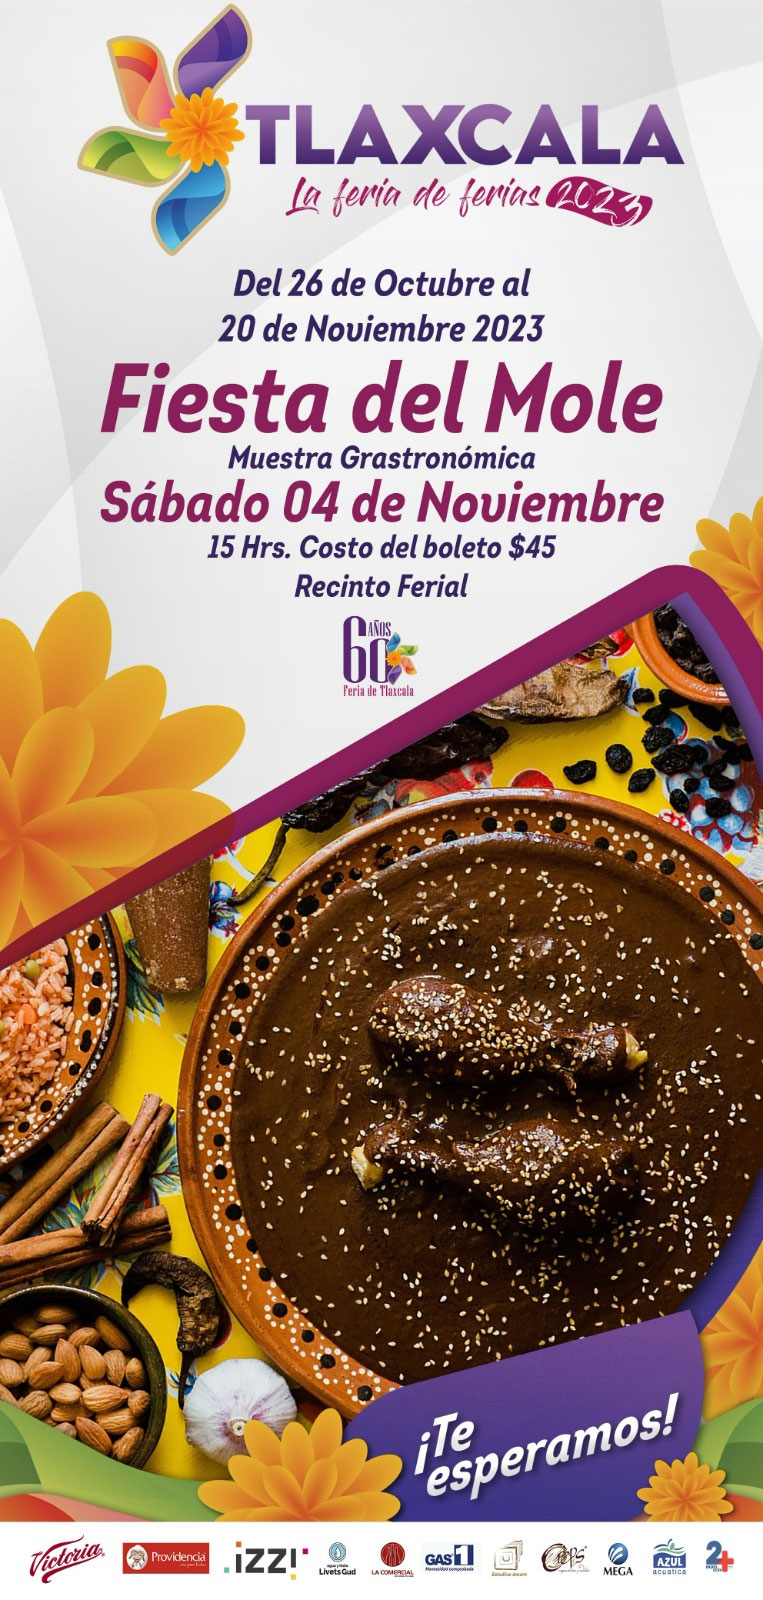 Invita patronato a la fiesta del mole en “Tlaxcala, la Feria de Ferias 2023”